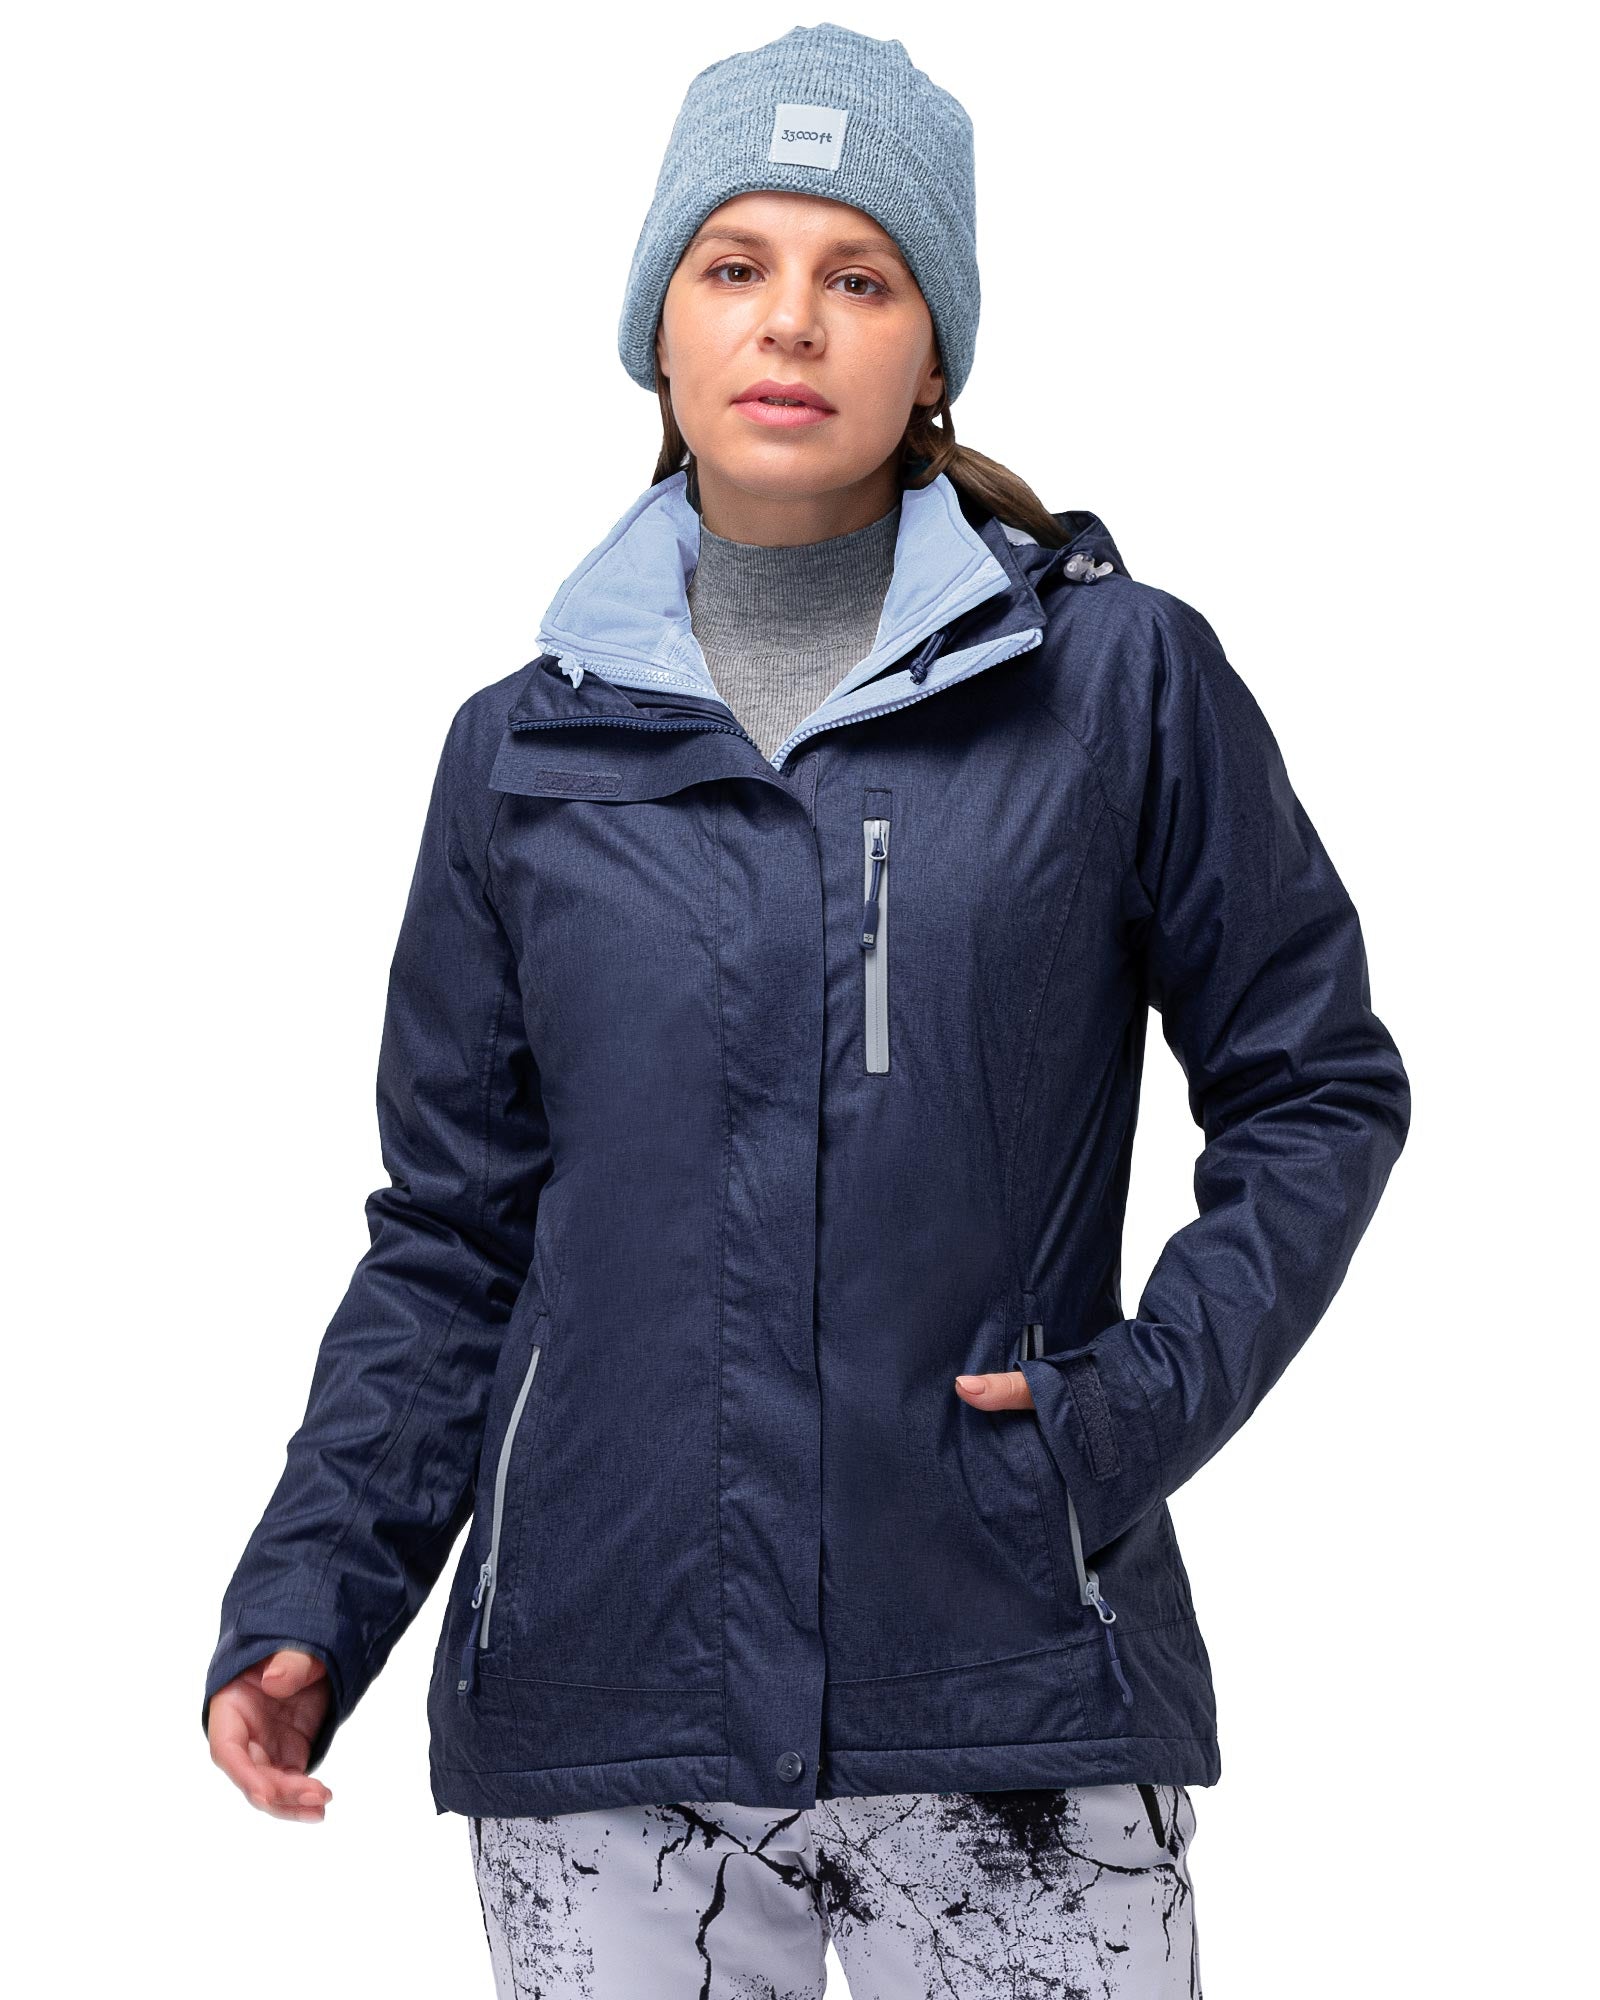 Women's Fleece Jackets, Fleece Lined & Waterproof